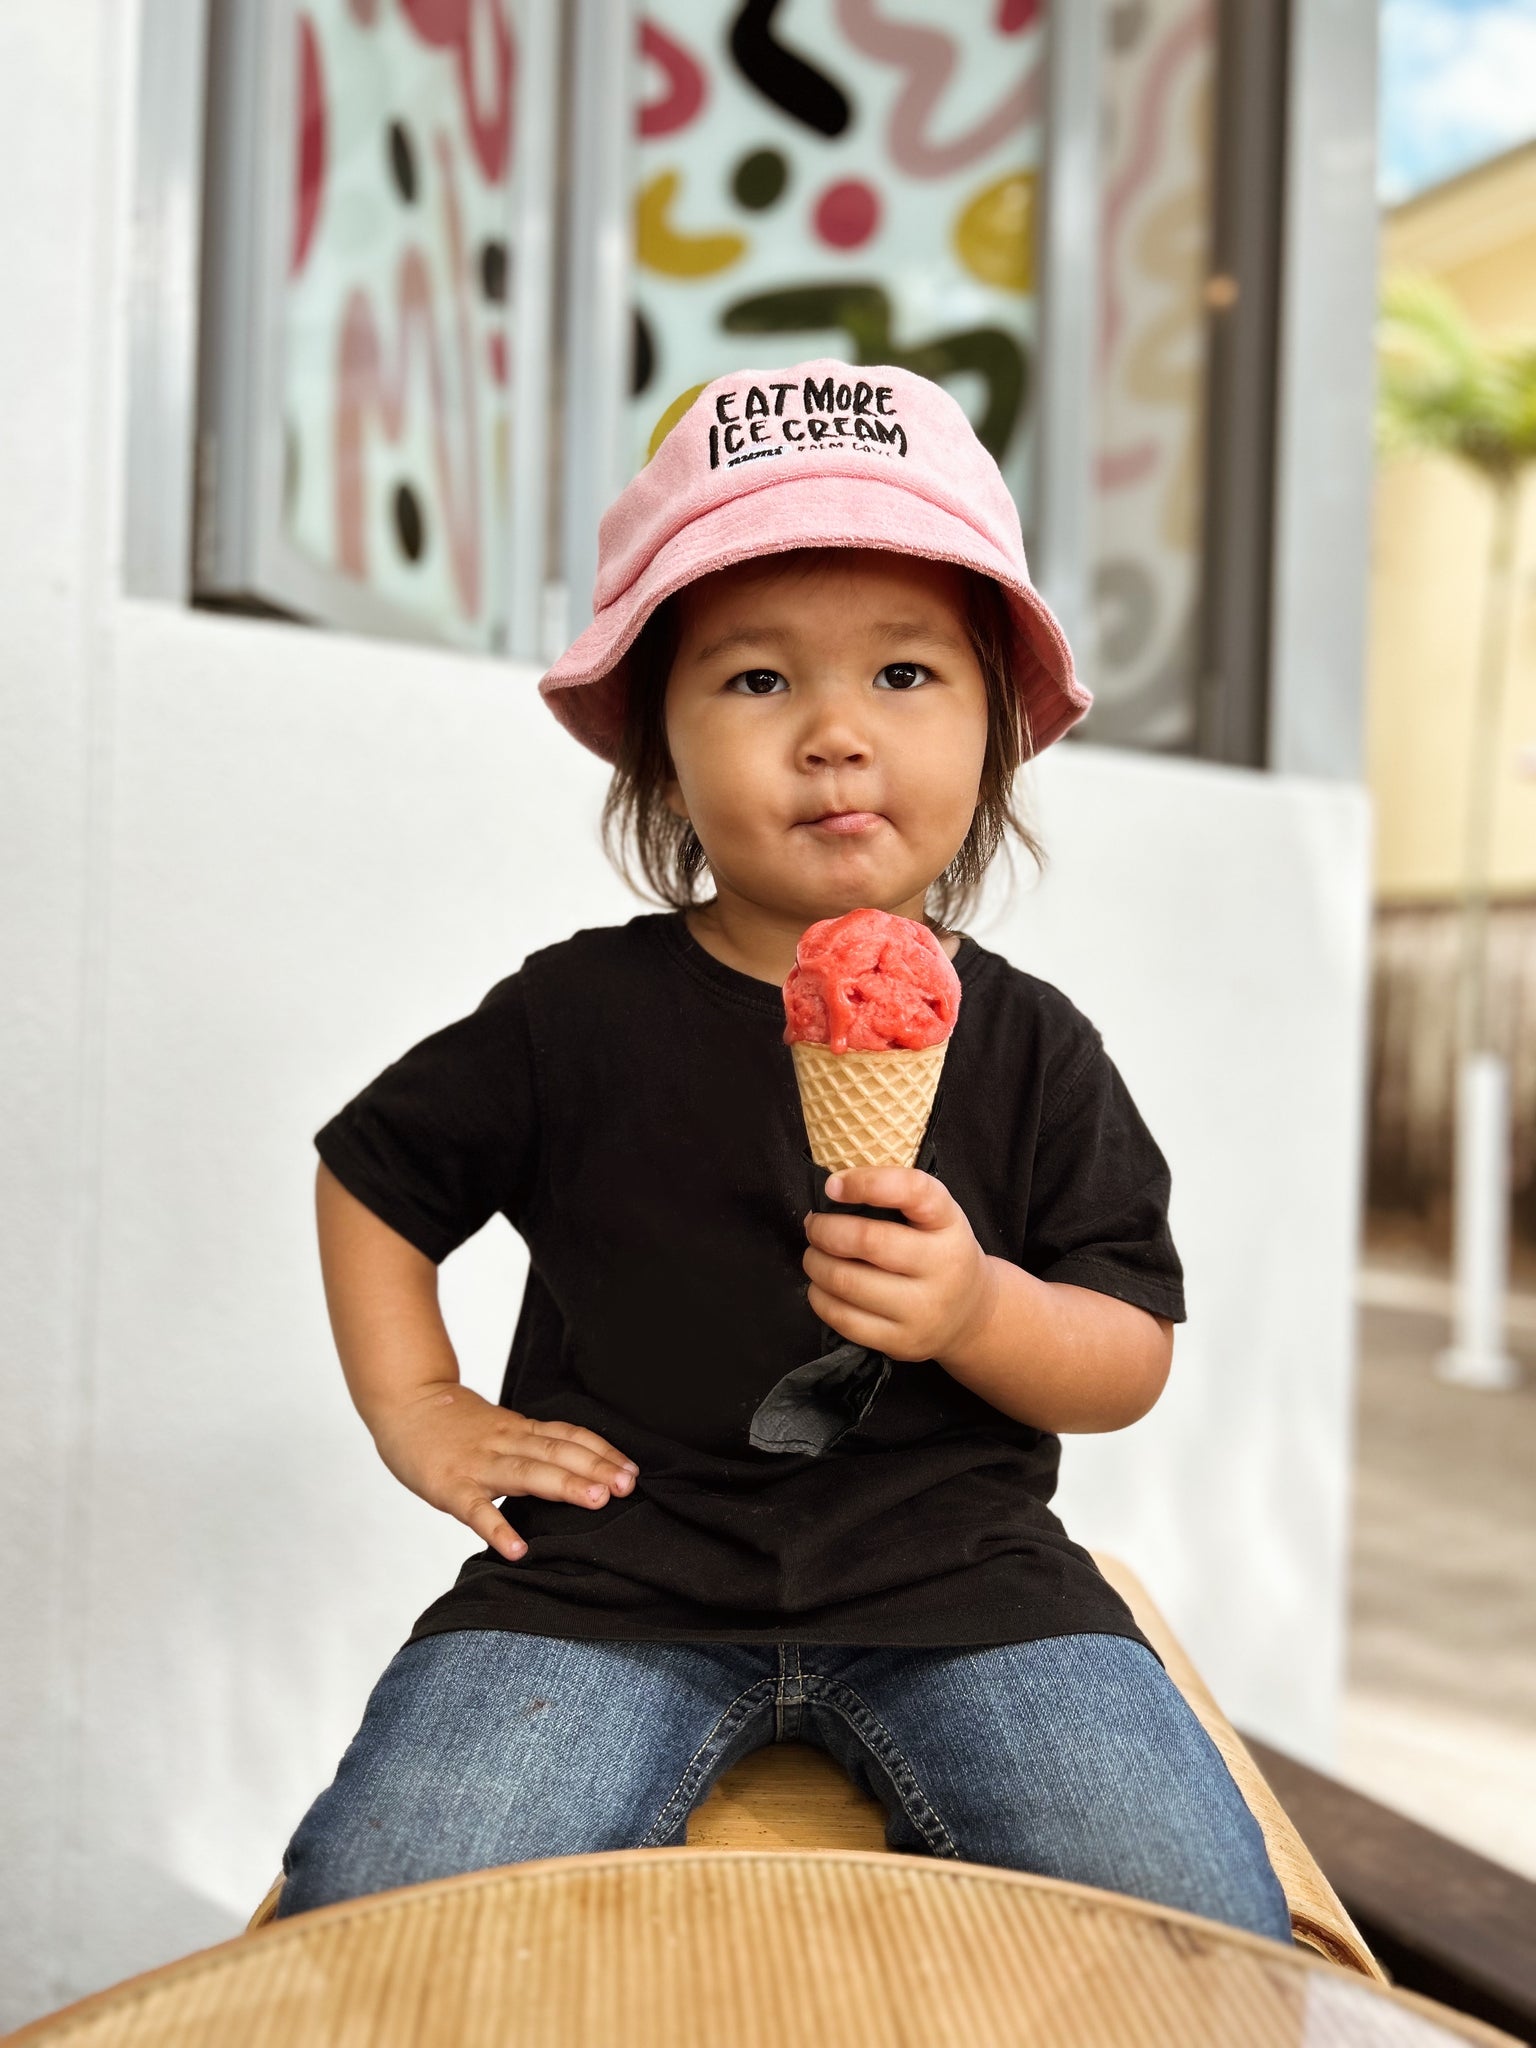 Numi ‘Eat More Ice Cream’ hat